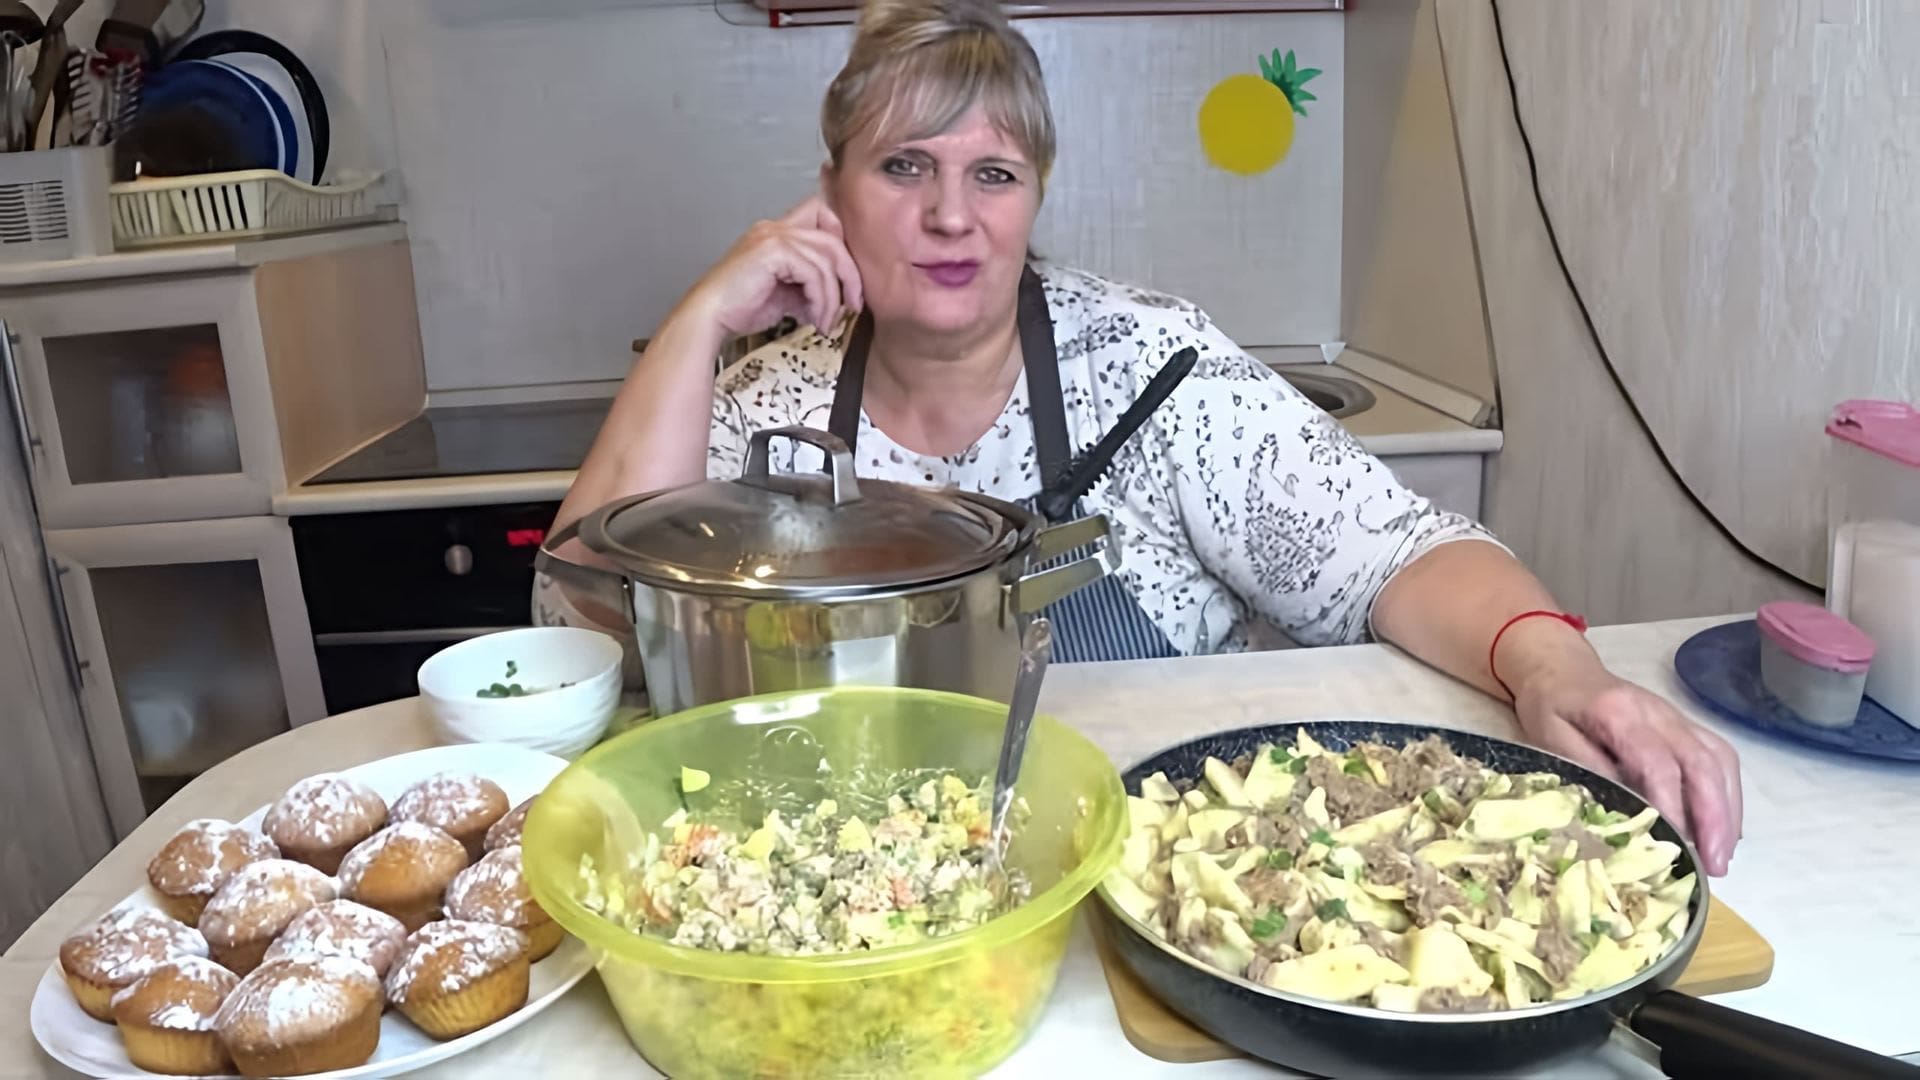 В этом видео демонстрируется приготовление трех блюд: лимонных кексов, свекольника и макарон по-флотски